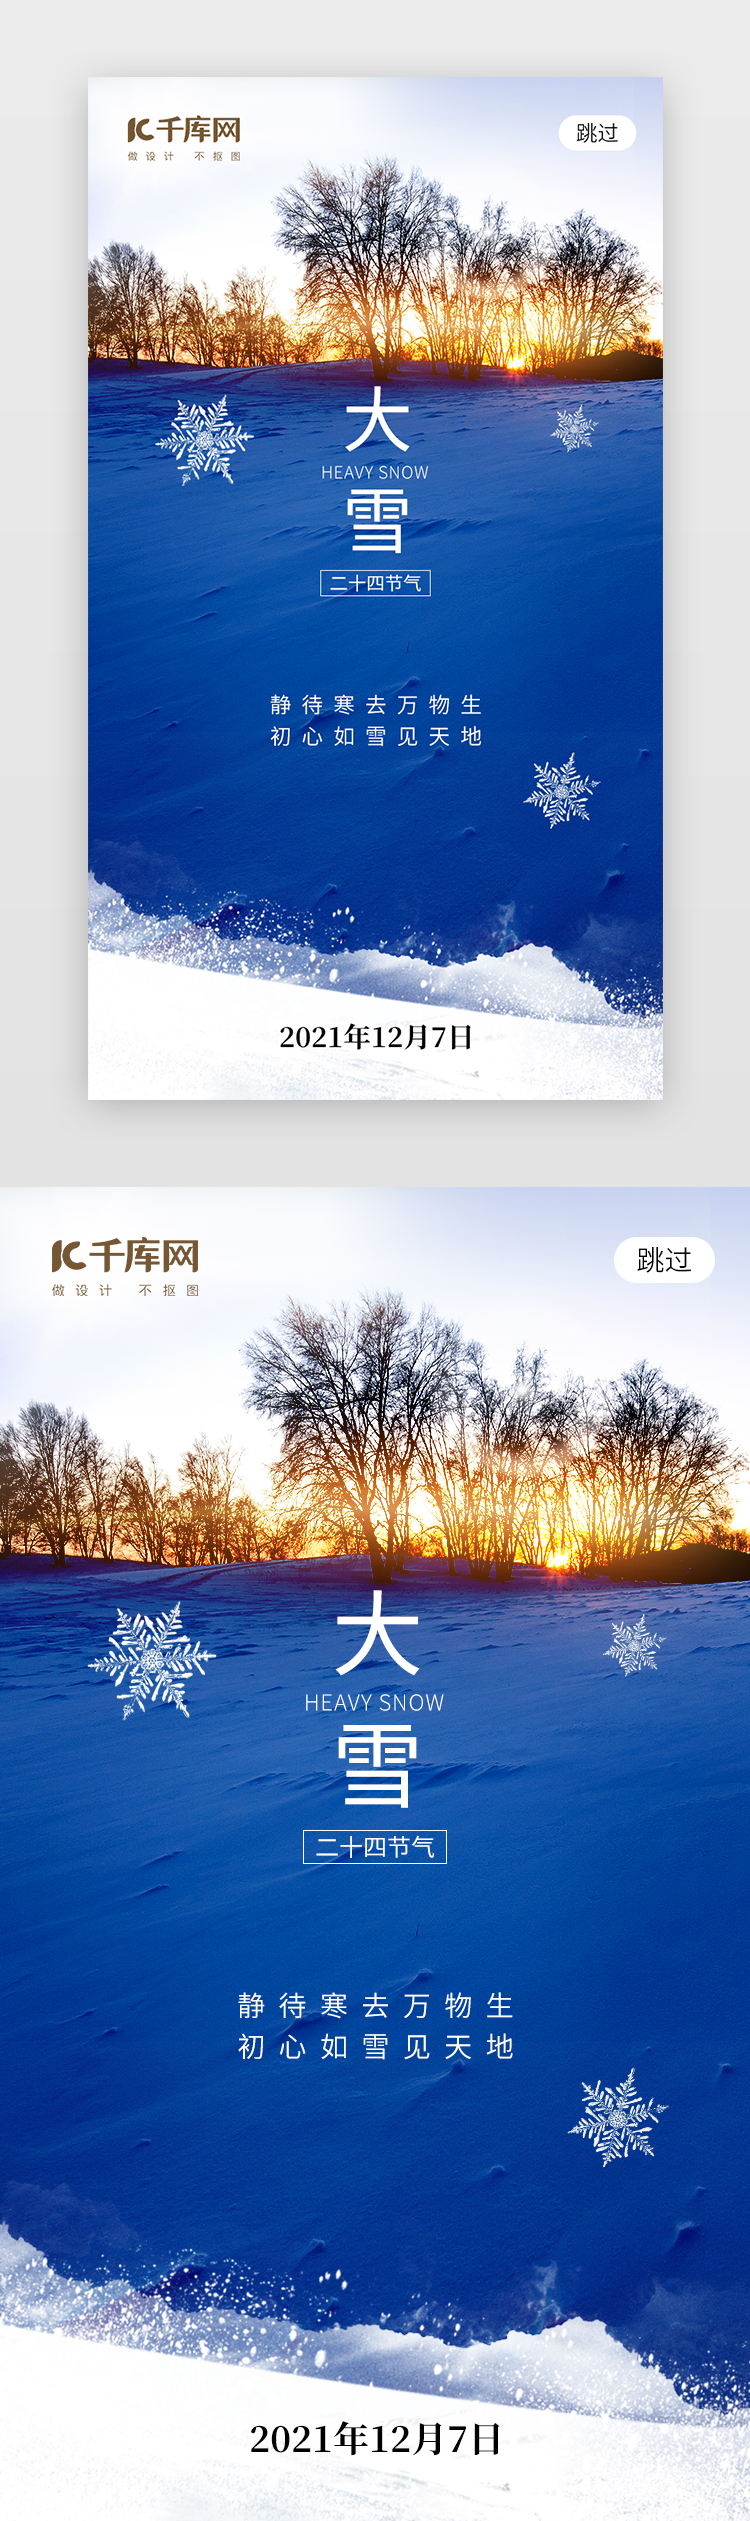 二十四节气大雪app闪屏创意蓝色积雪图片